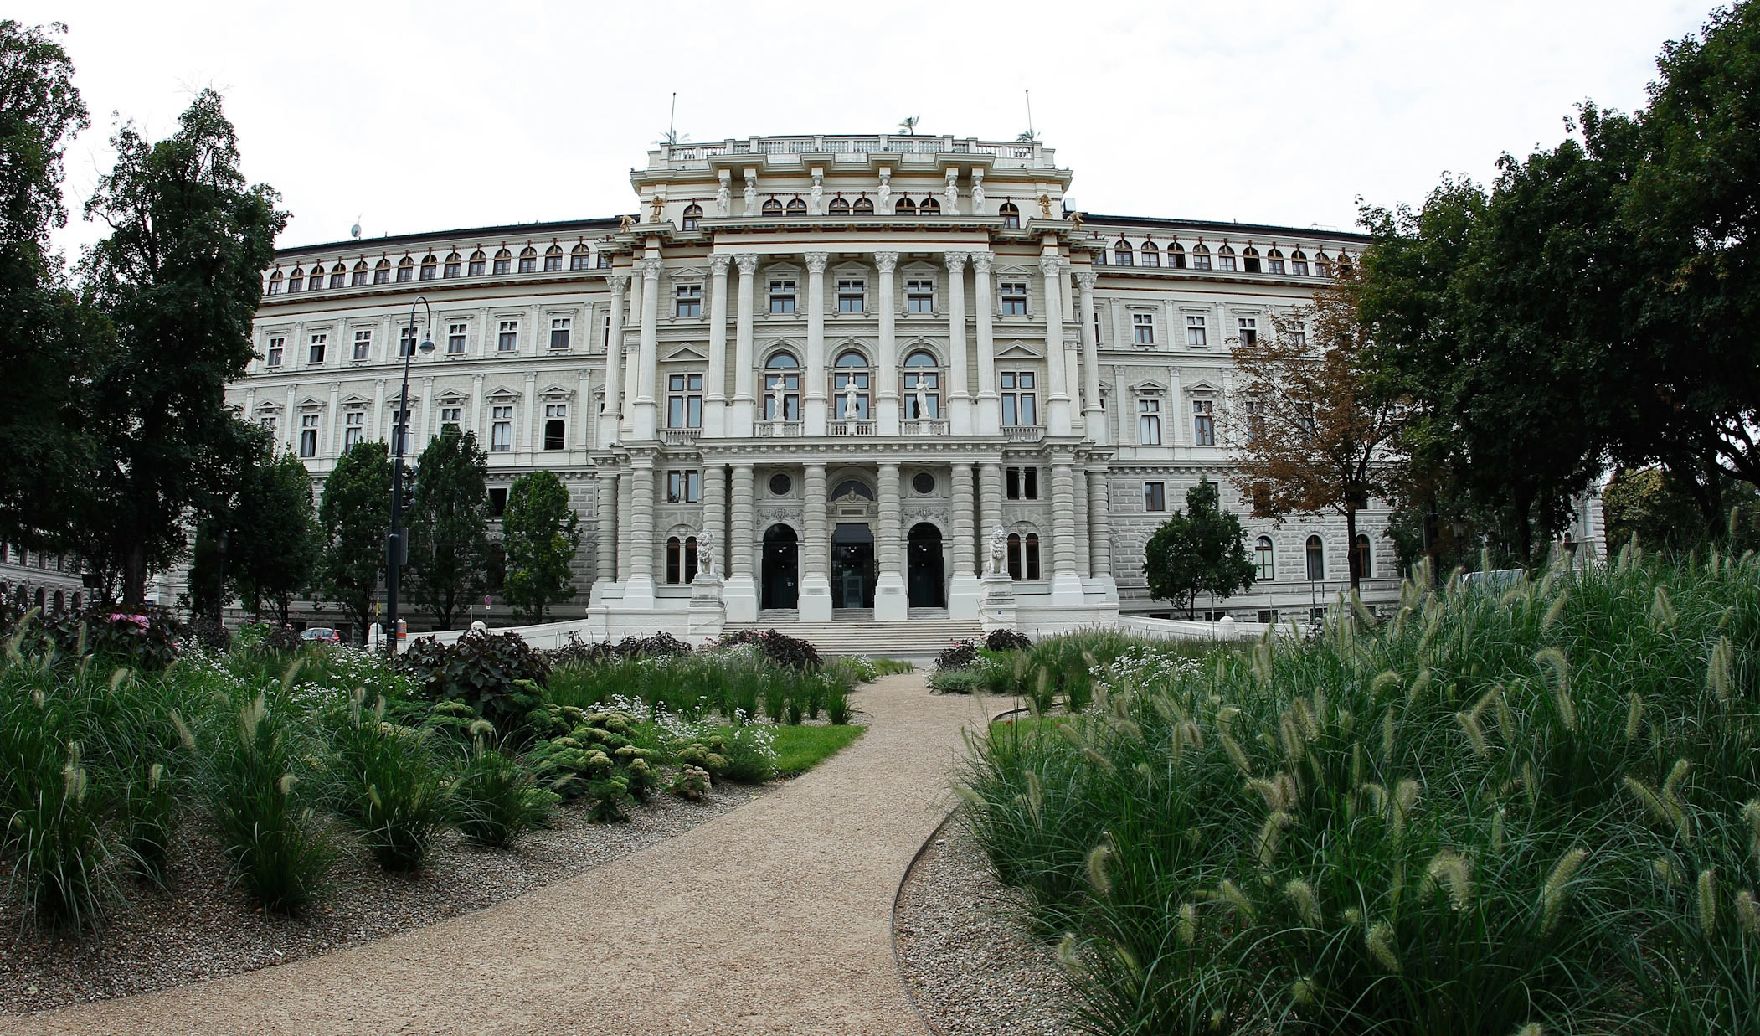 Der Justizpalast am Schmerlingplatz (Rückseite). Schlagworte: Bäume, Gebäude, Natur, Park, Sehenswürdigkeiten